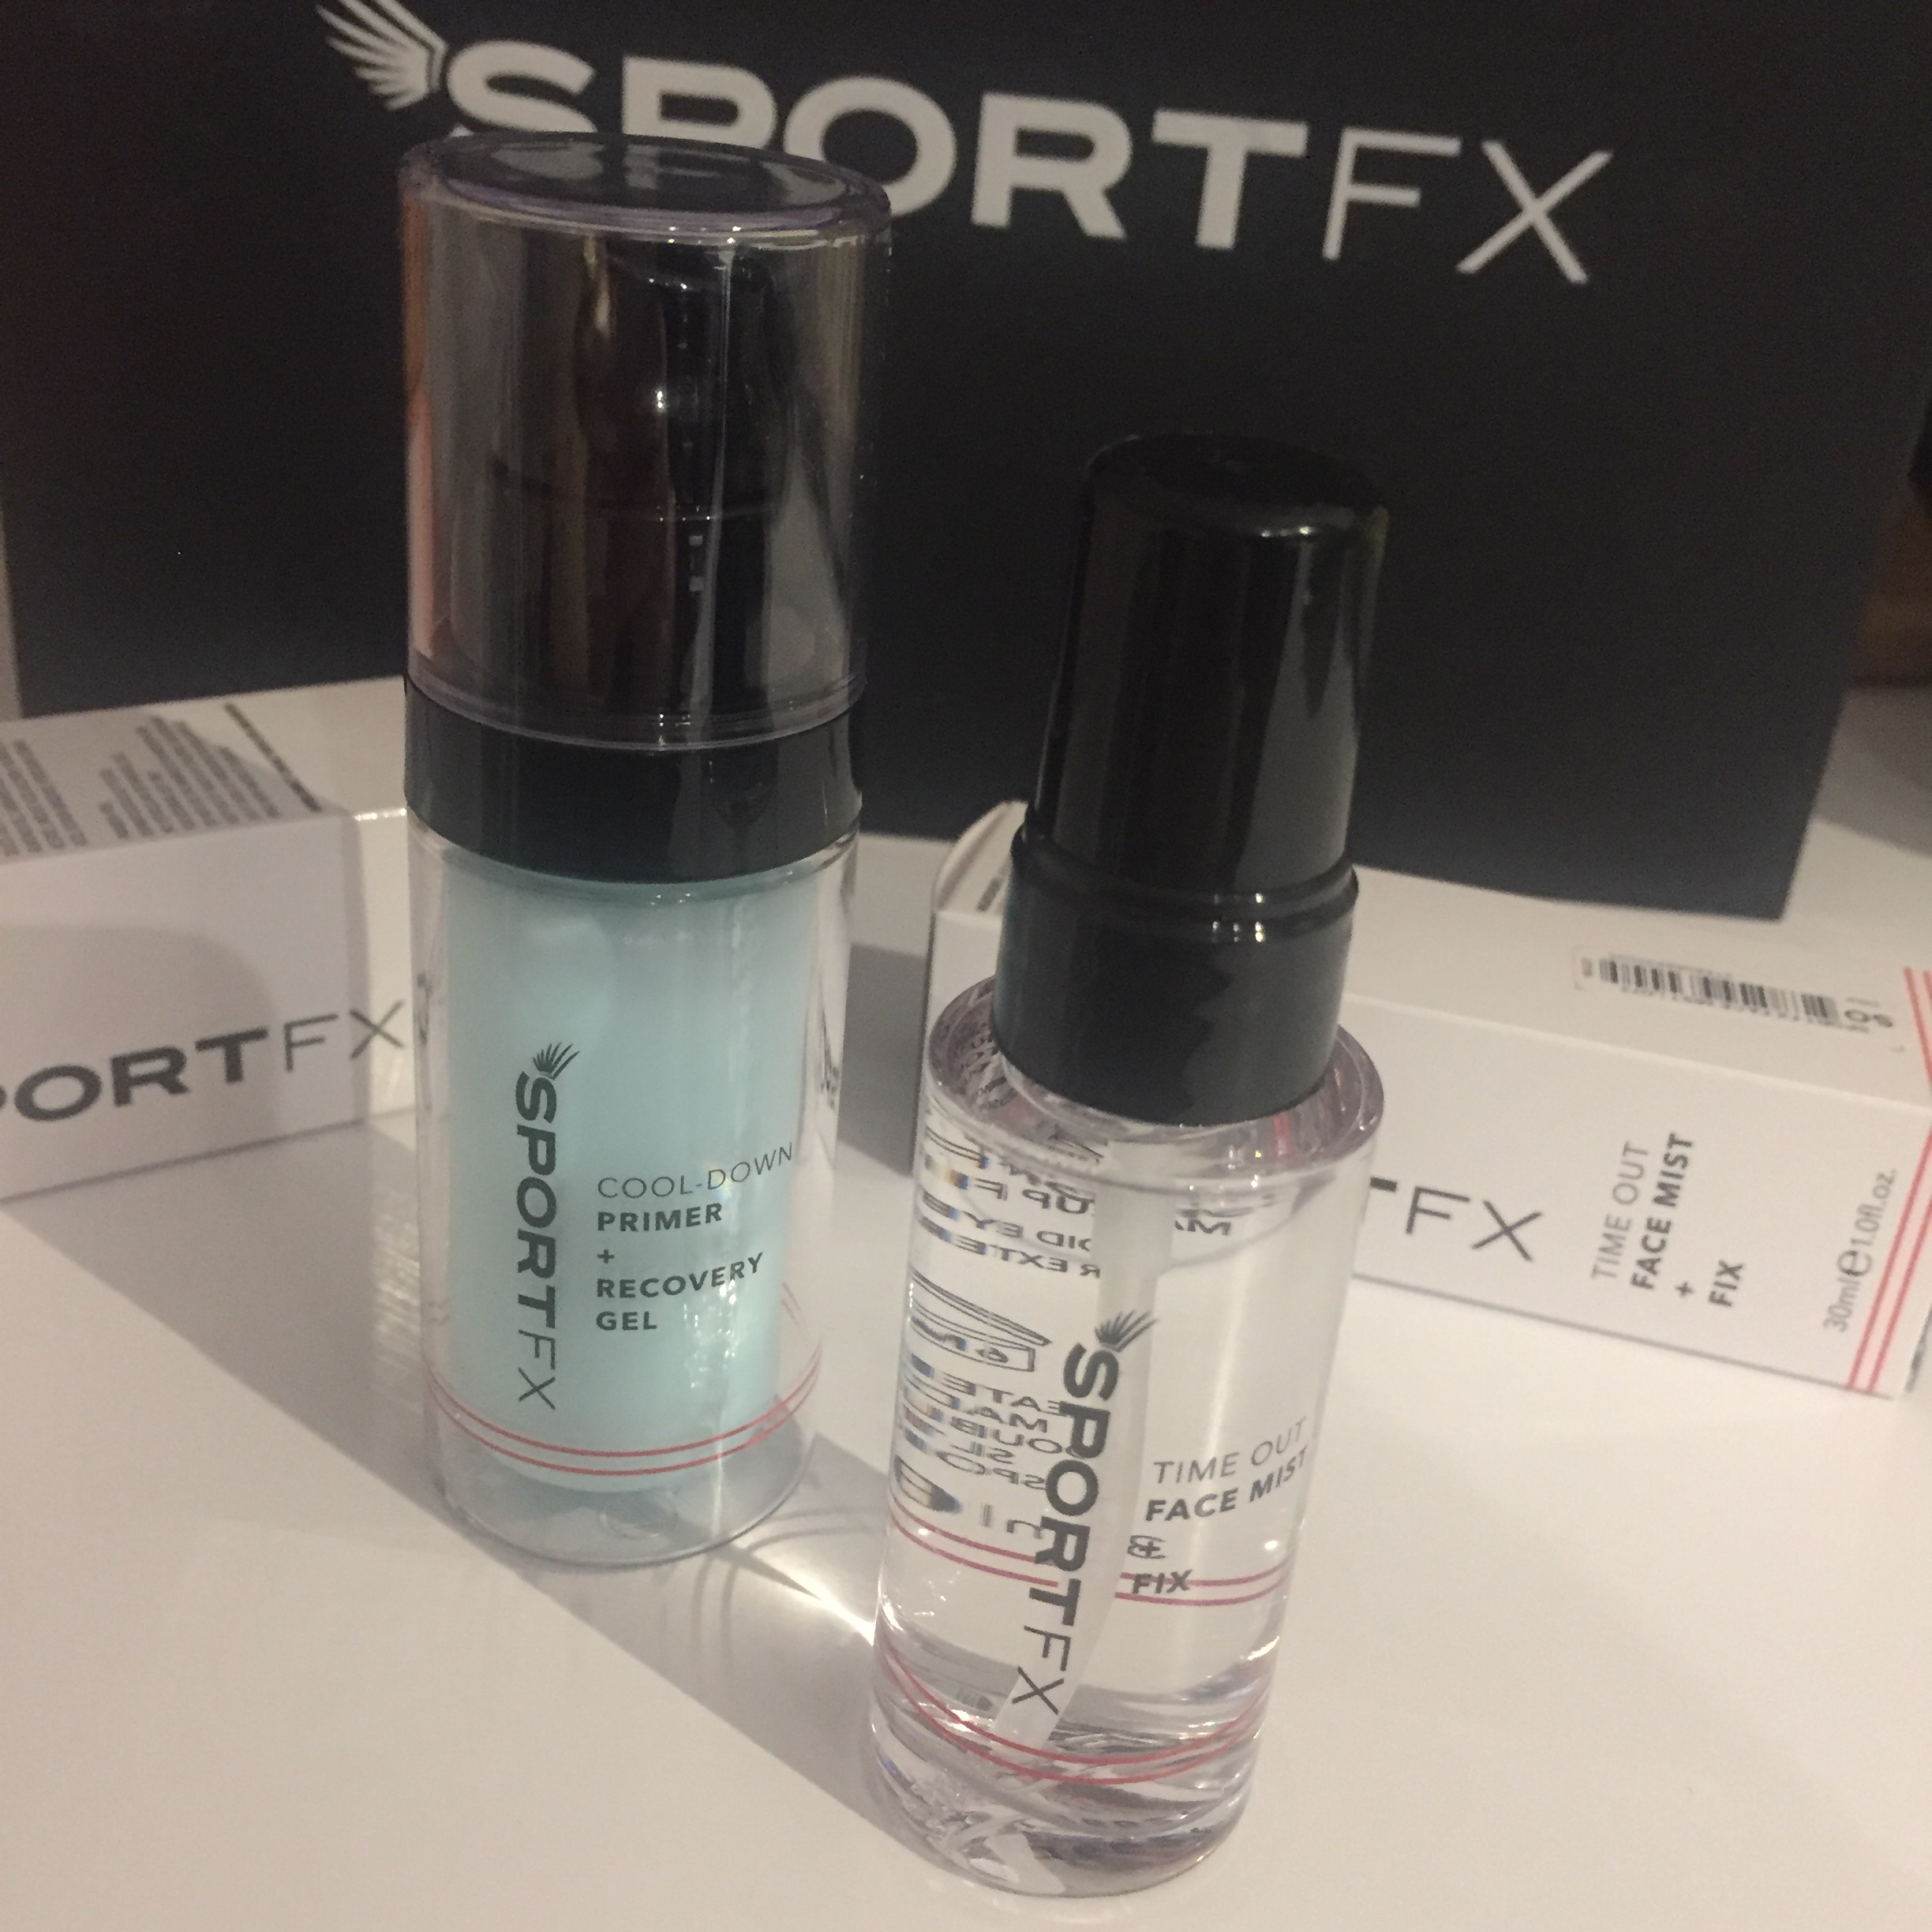 SportFX primer and face mist 2